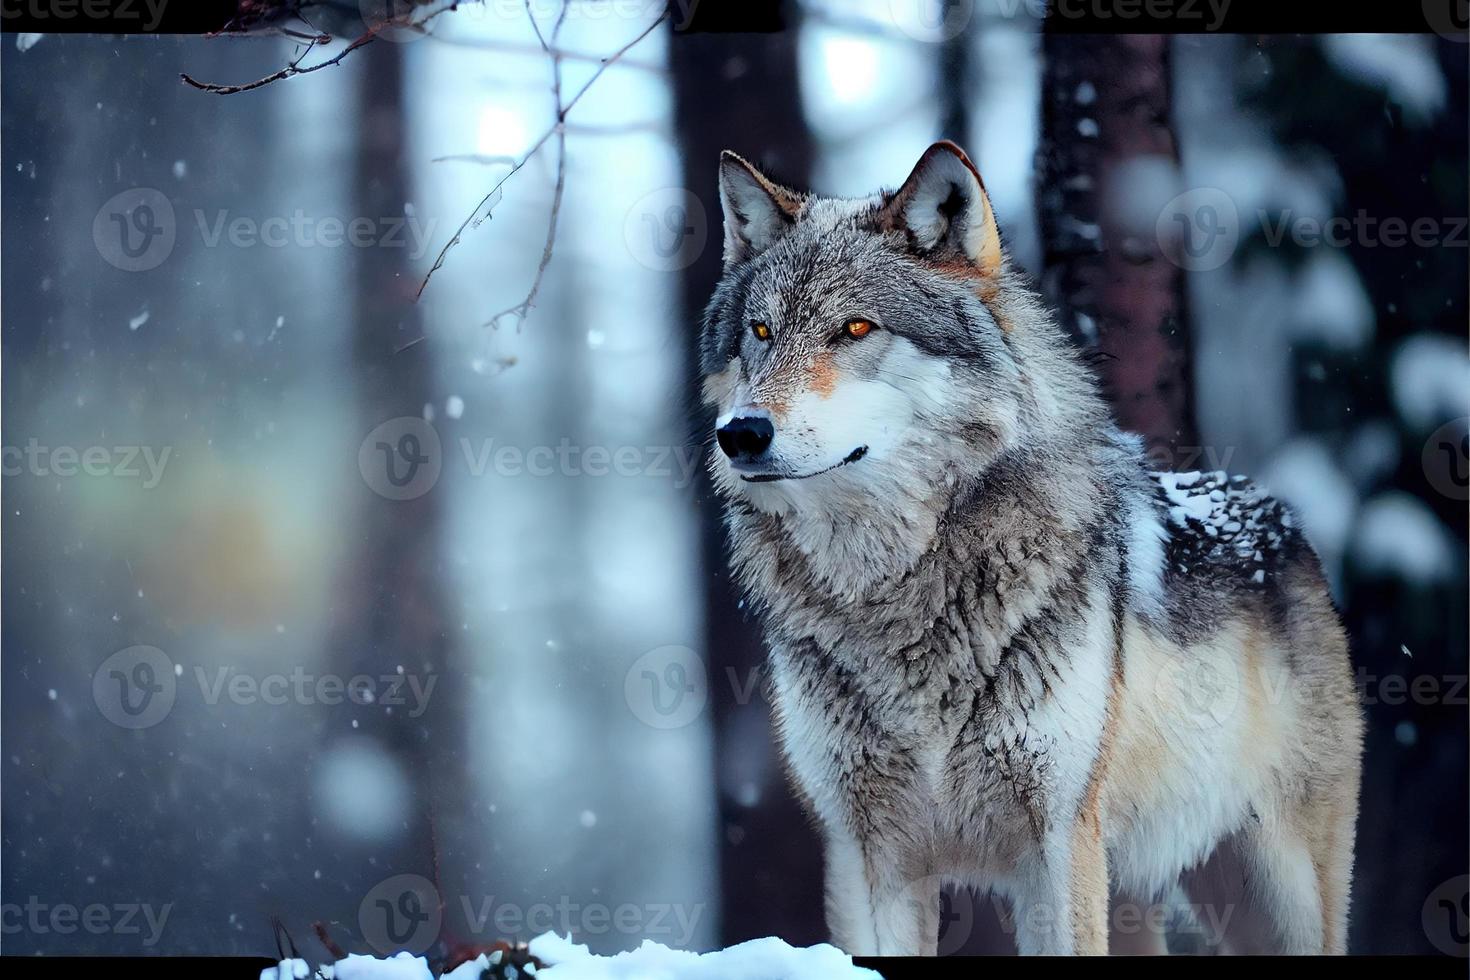 lobo eurasiano no habitat de inverno branco bela floresta de inverno foto